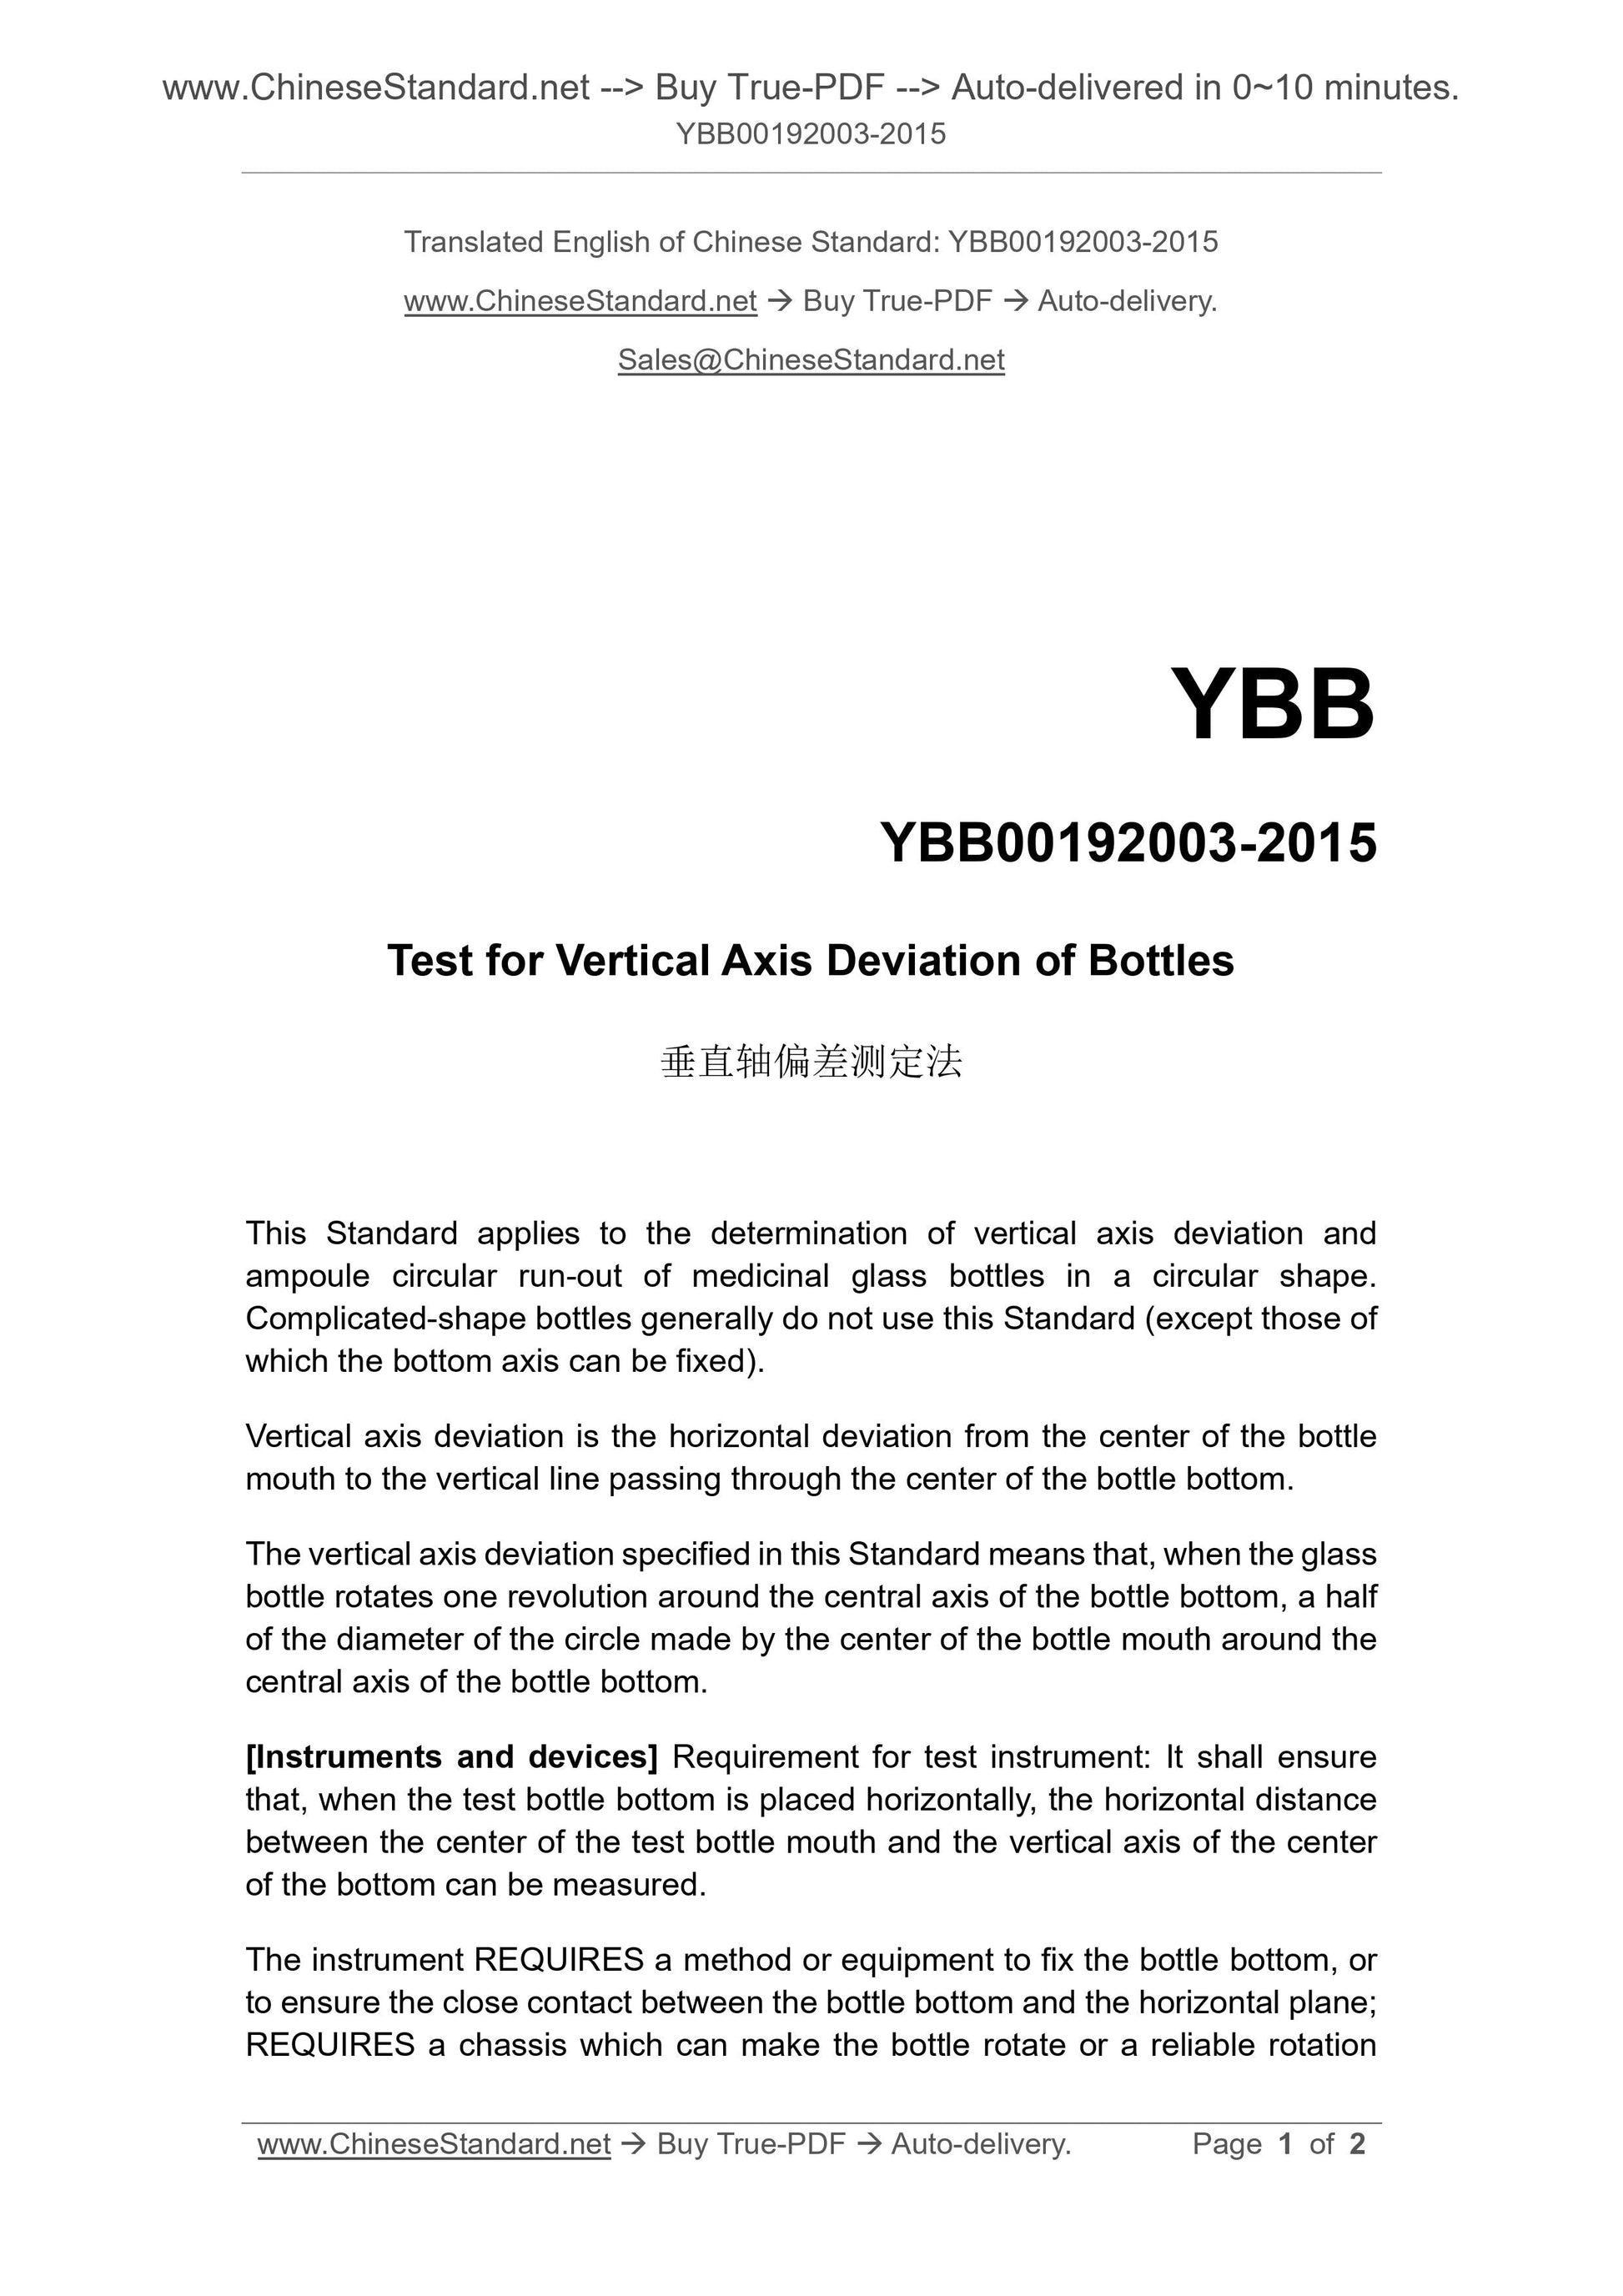 YBB 00192003-2015 Page 1